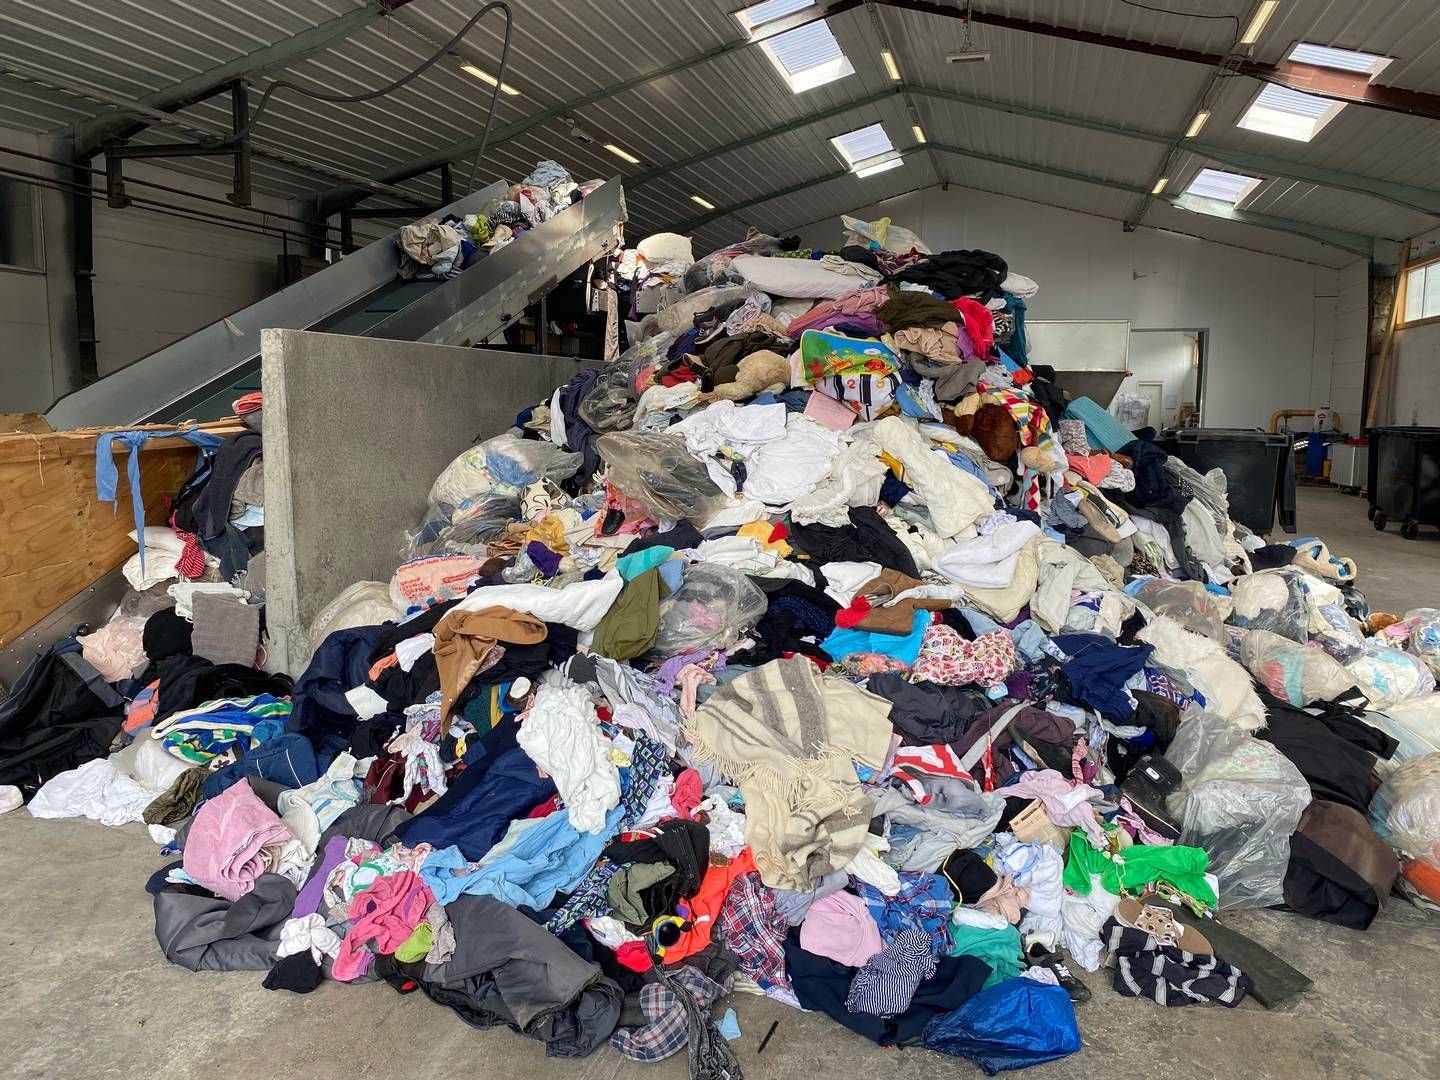 Det vil anspore mode- og tekstilbranchen til at tænke mere i genbrug og holdbarhed, hvis de bliver pålagt producentansvar, lyder et i rapport. | Foto: Casper Nørregaard